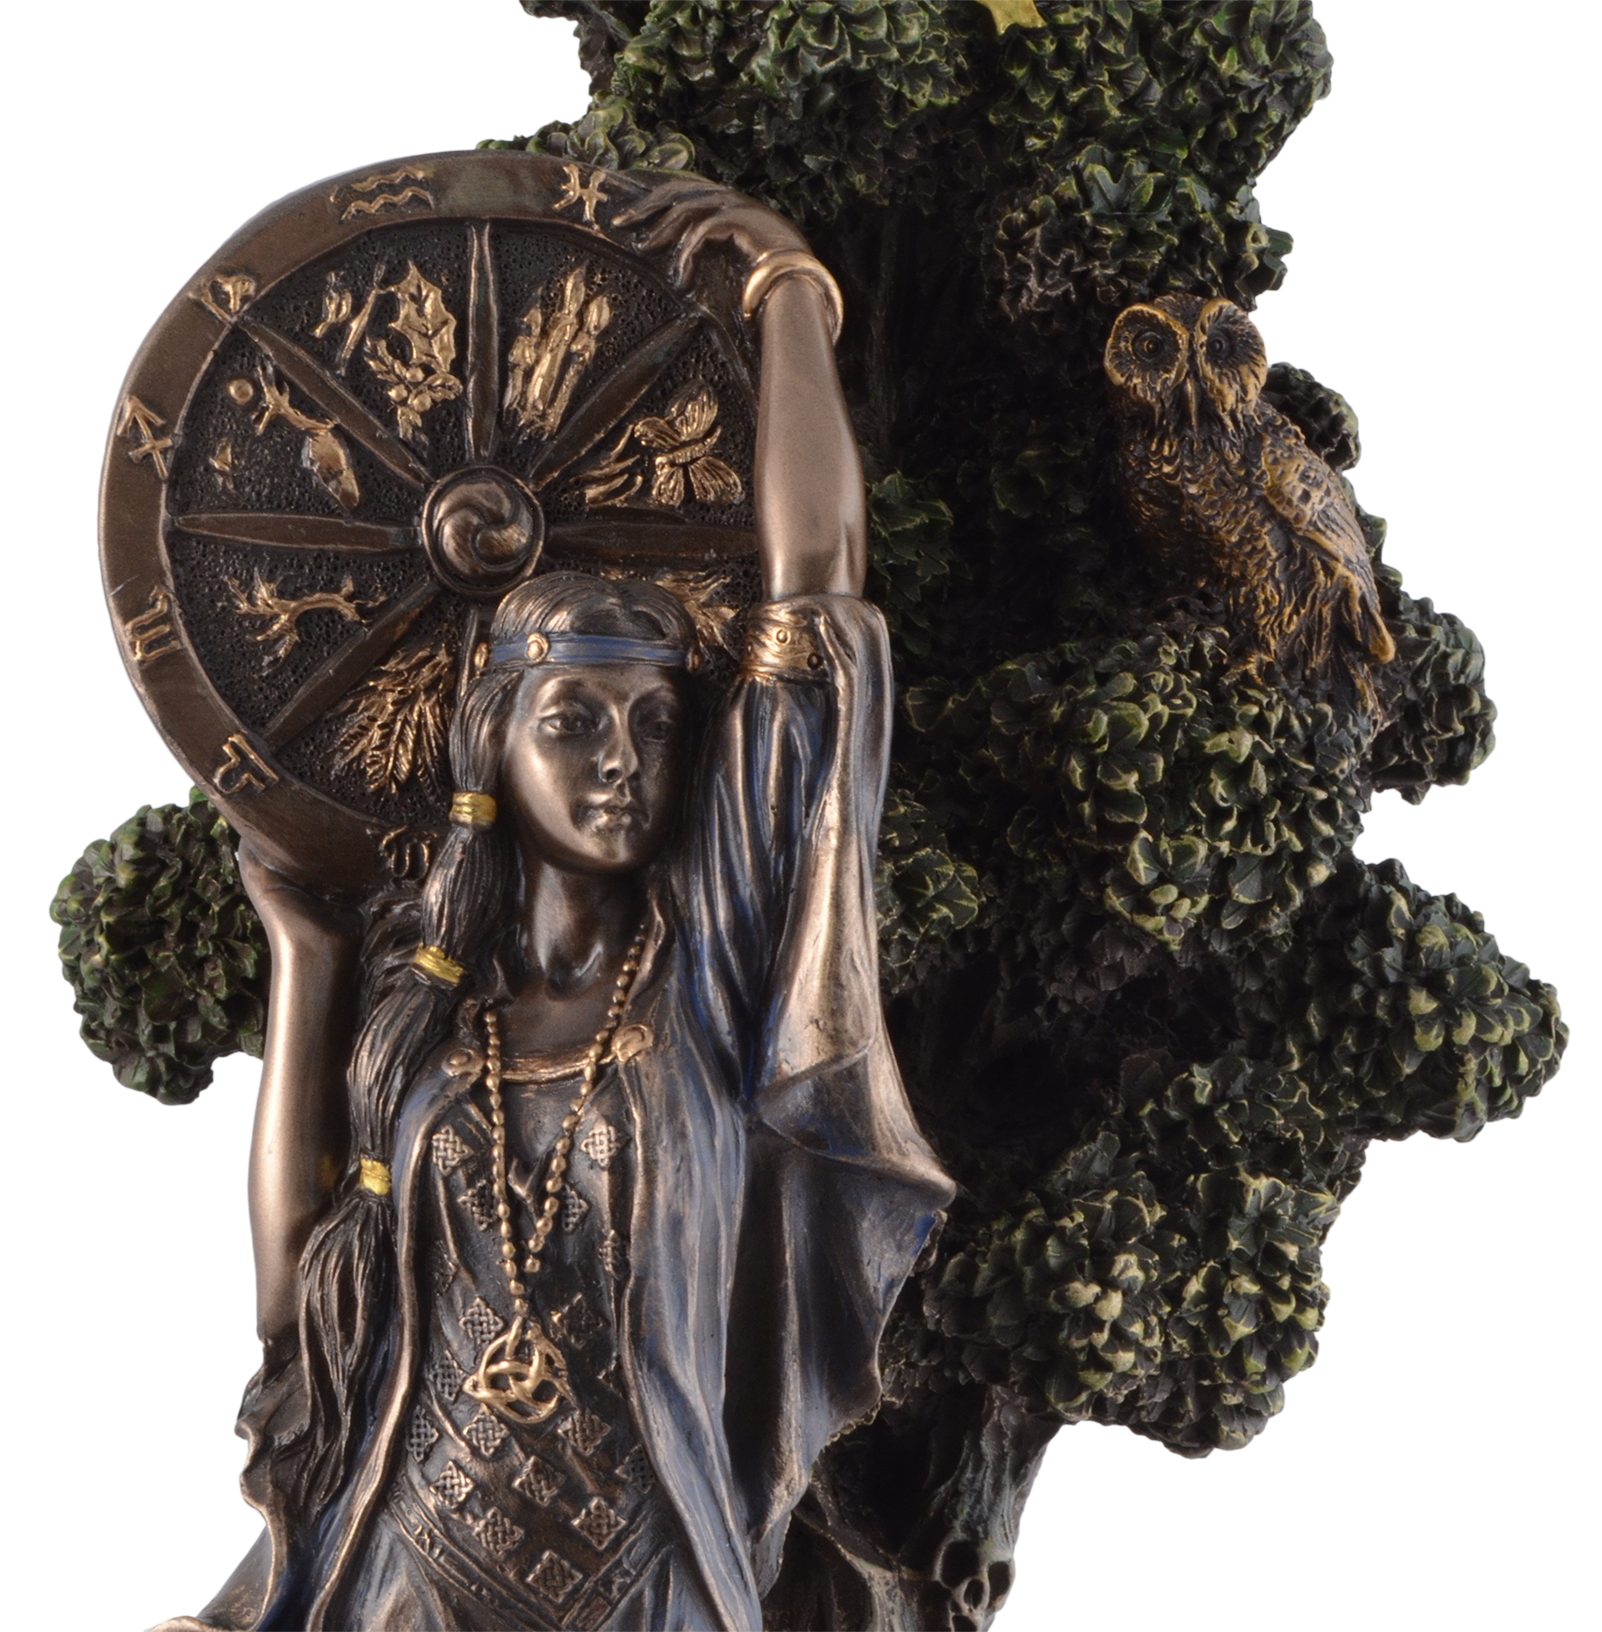 Vogler direct Gmbh Dekofigur des Hand Schicksals Arianrhod von Göttin - Veronese, keltische LxBxH coloriert, bronziert ca. 15x10x24cm by und